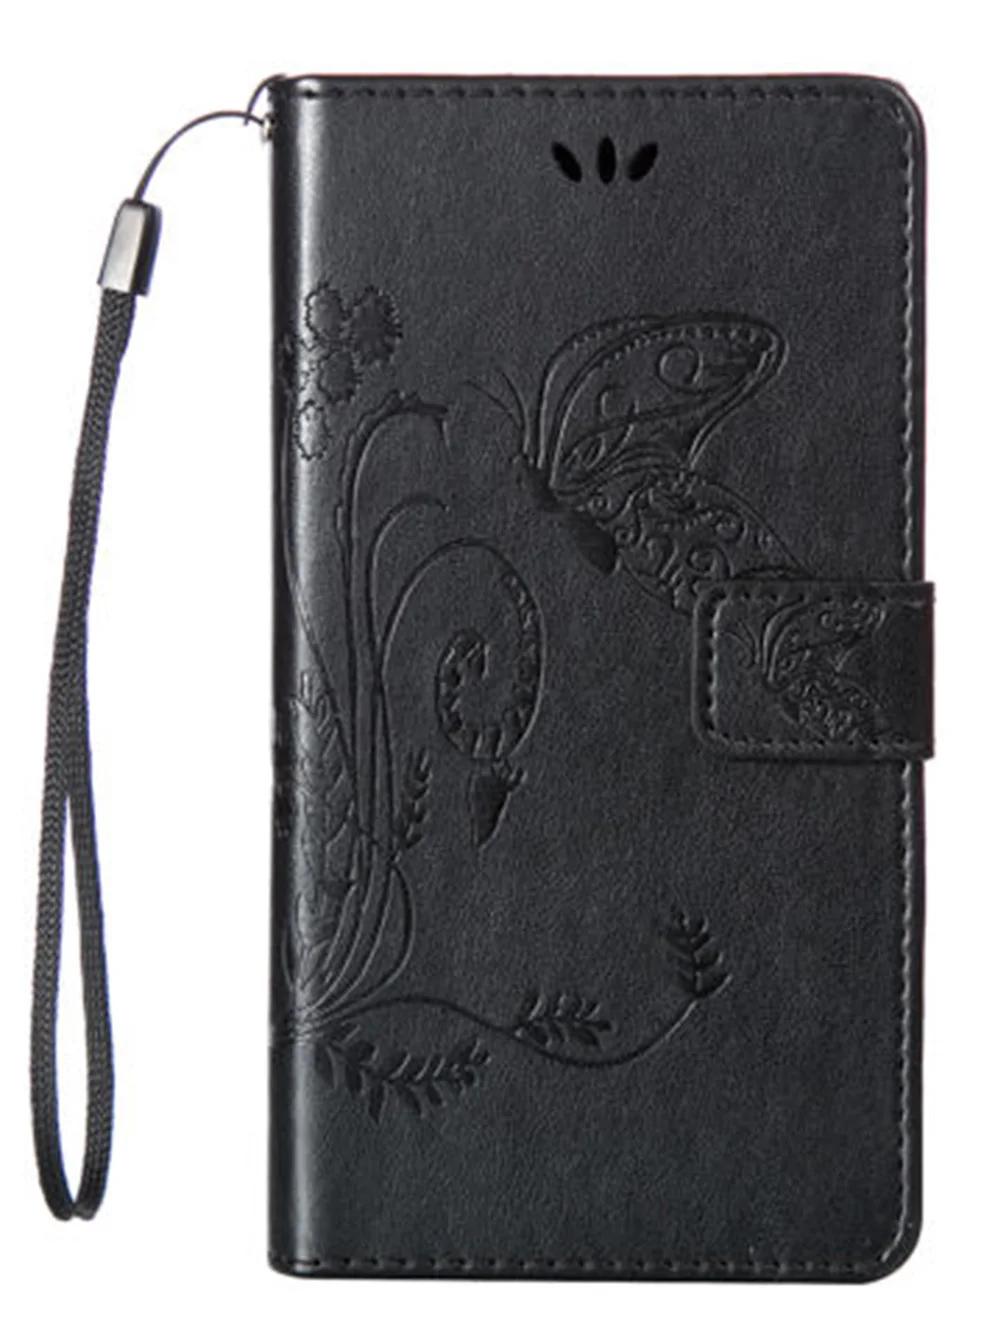 Чехол-бабочка для DEXP Ixion B140 B145 BS150 Z150 B160 G250 GL255 B350 кожаный защитный чехол для мобильного телефона смартфона s - Цвет: Black